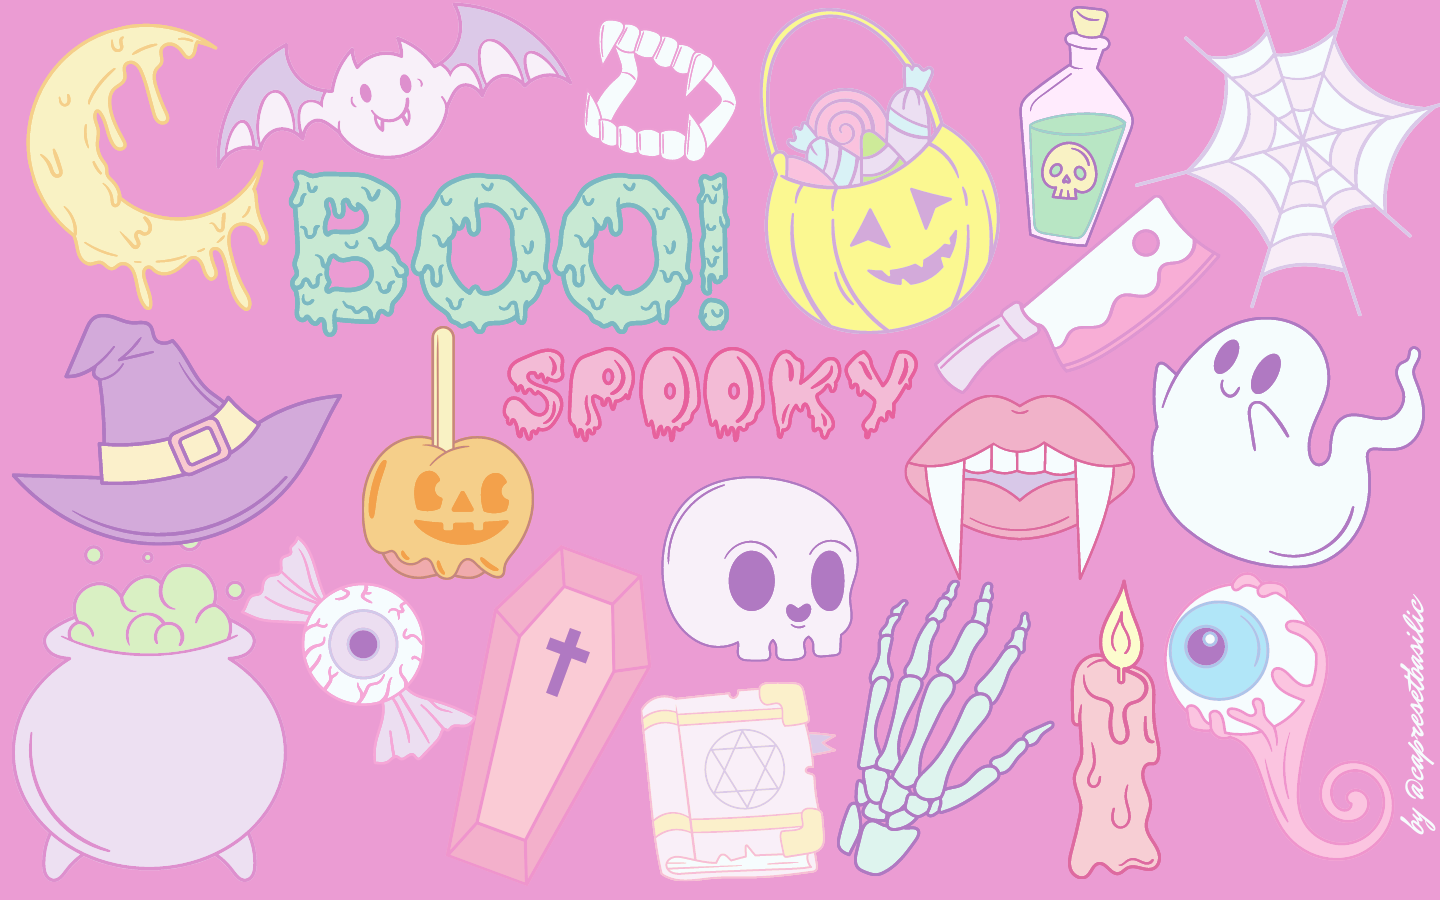 Spooky Pink Halloween desktop wallpaper Macbook. Halloween desktop wallpaper, Cute wallpaper, Pink halloween